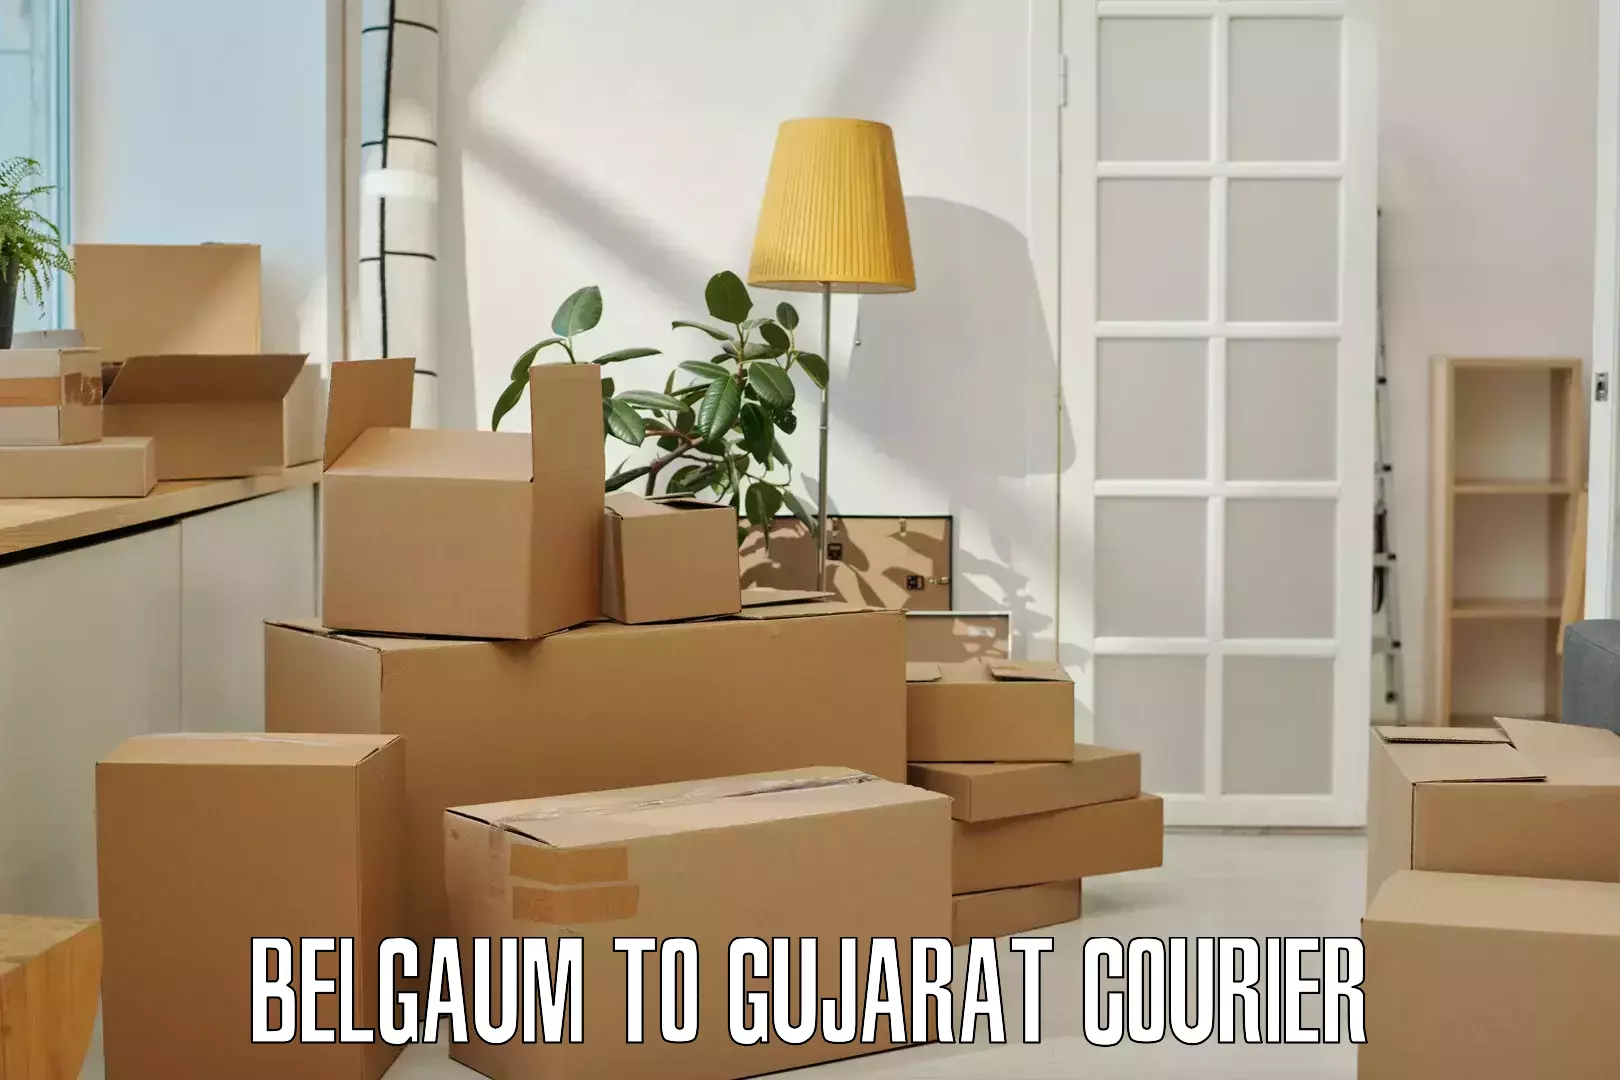 Secure shipping methods Belgaum to Udhana